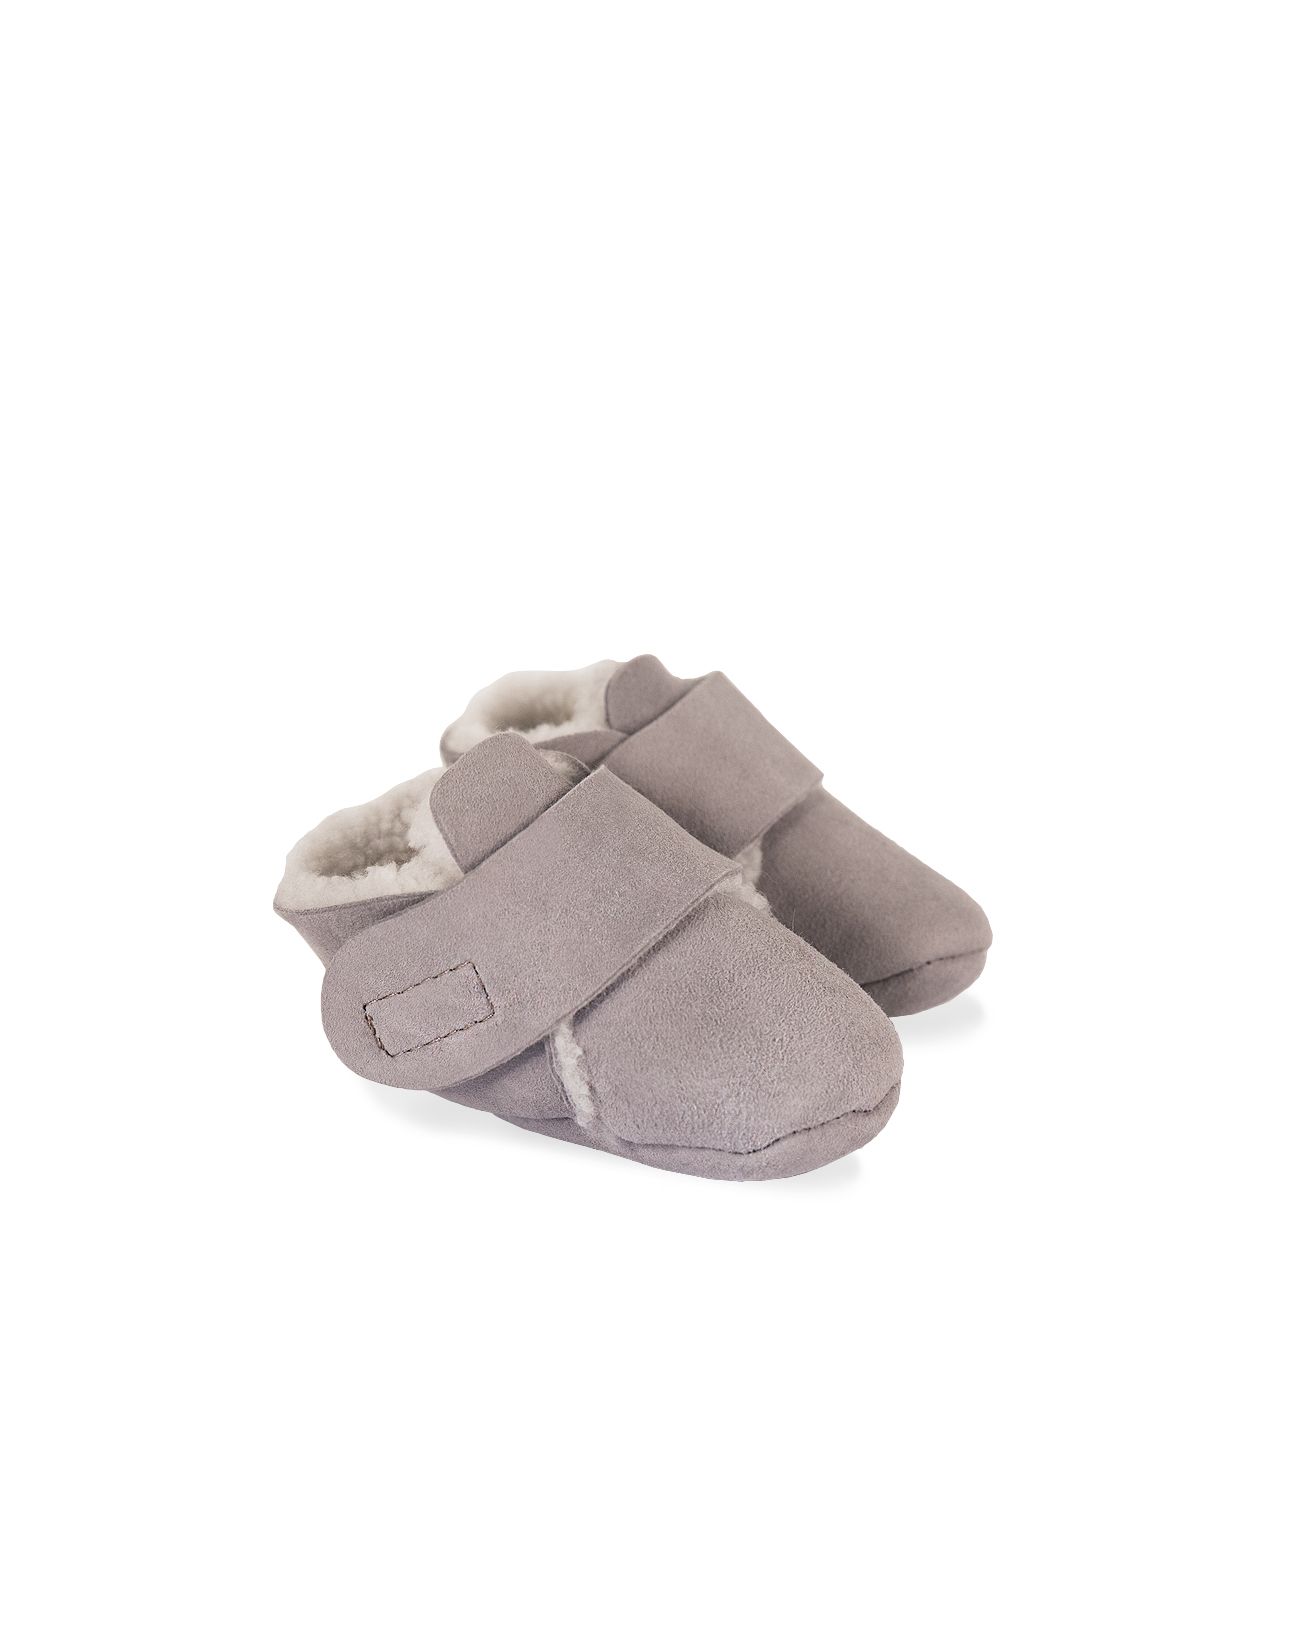 Crawler Shoe / Light Grey / One Size